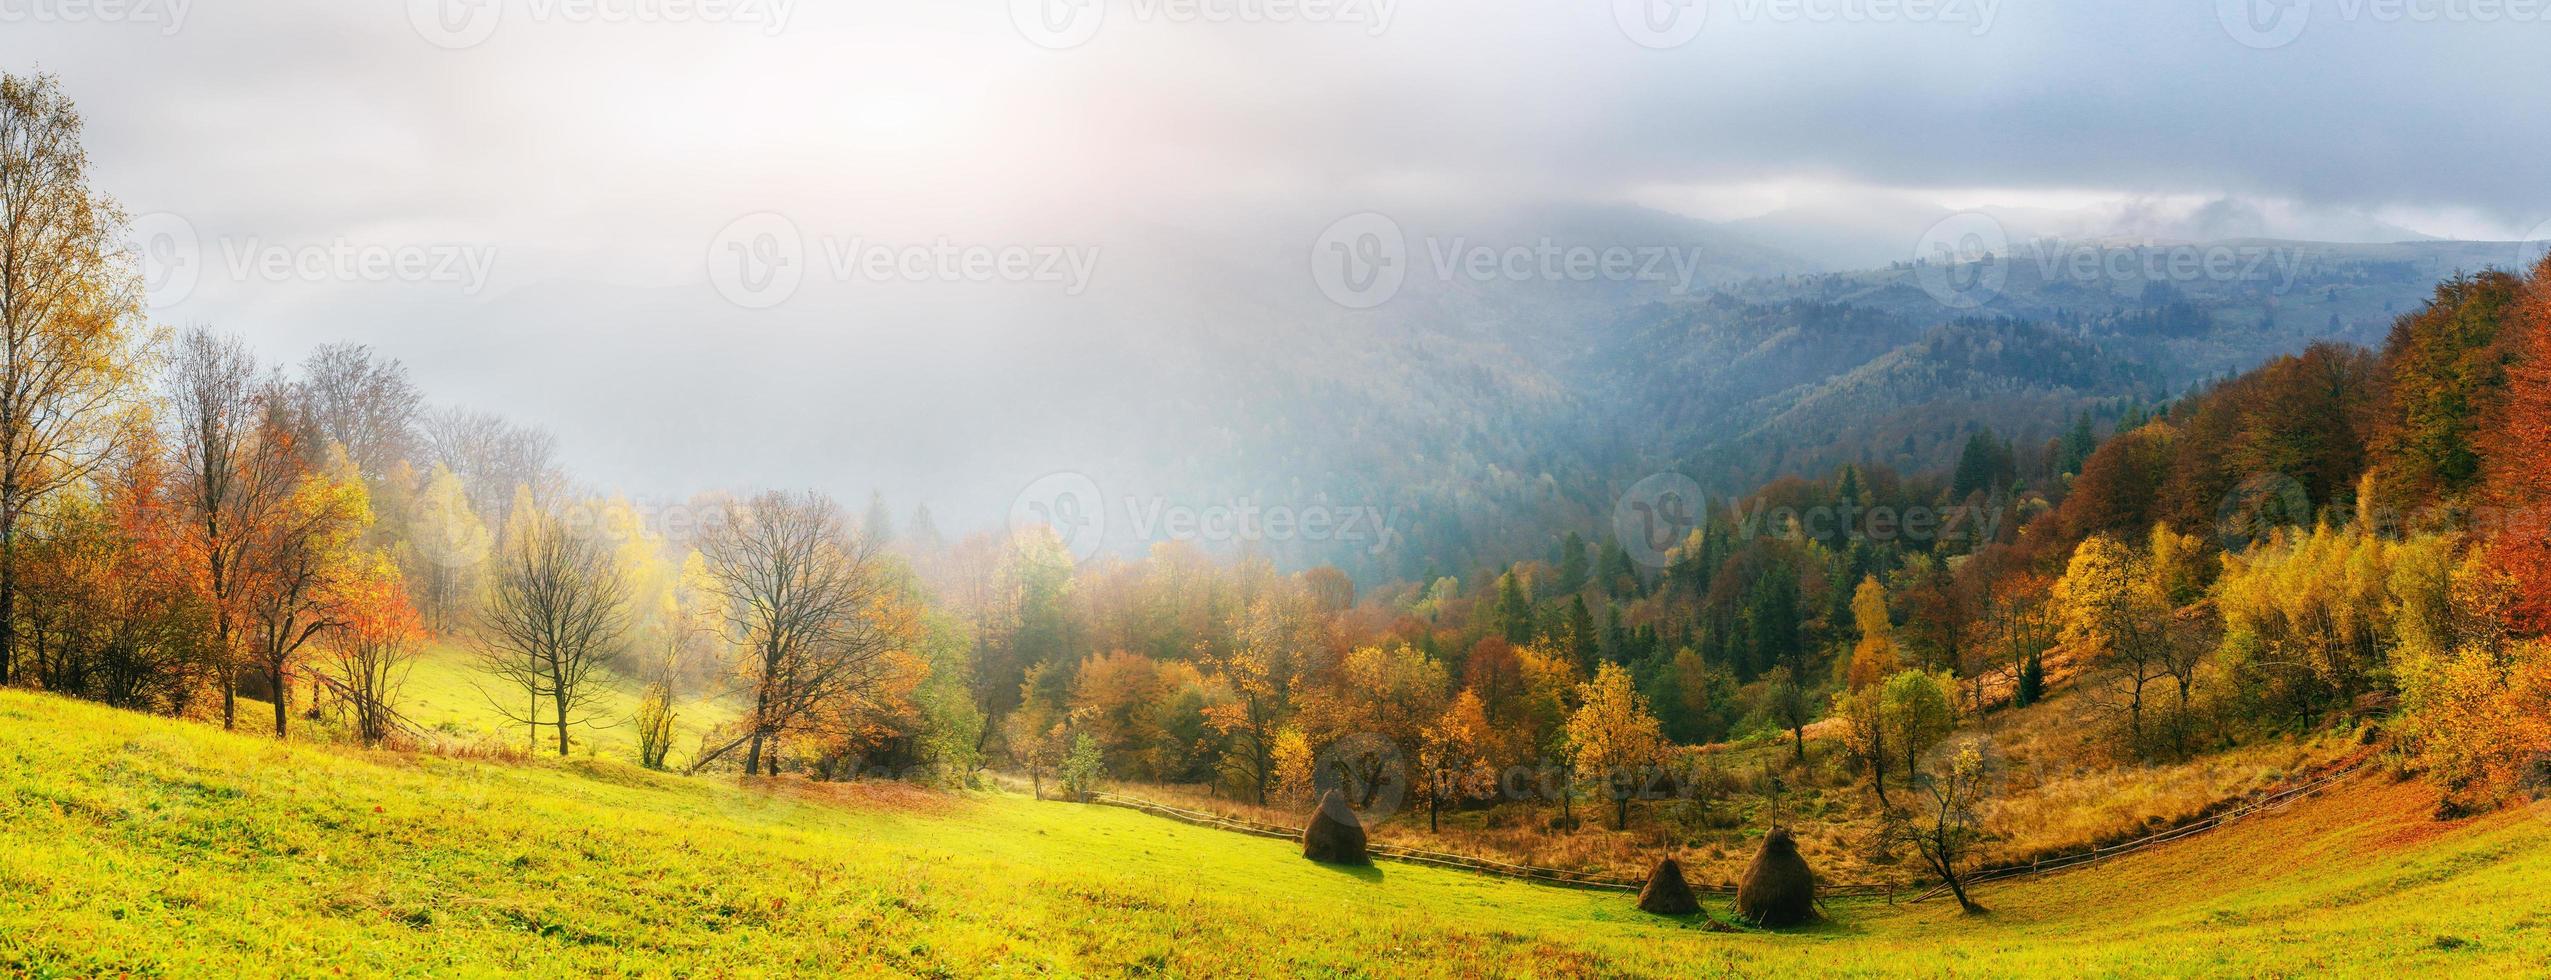 fantastischer Wald in der Karpaten-Ukraine. es kommt ein goldener Herbst in die Täler. foto